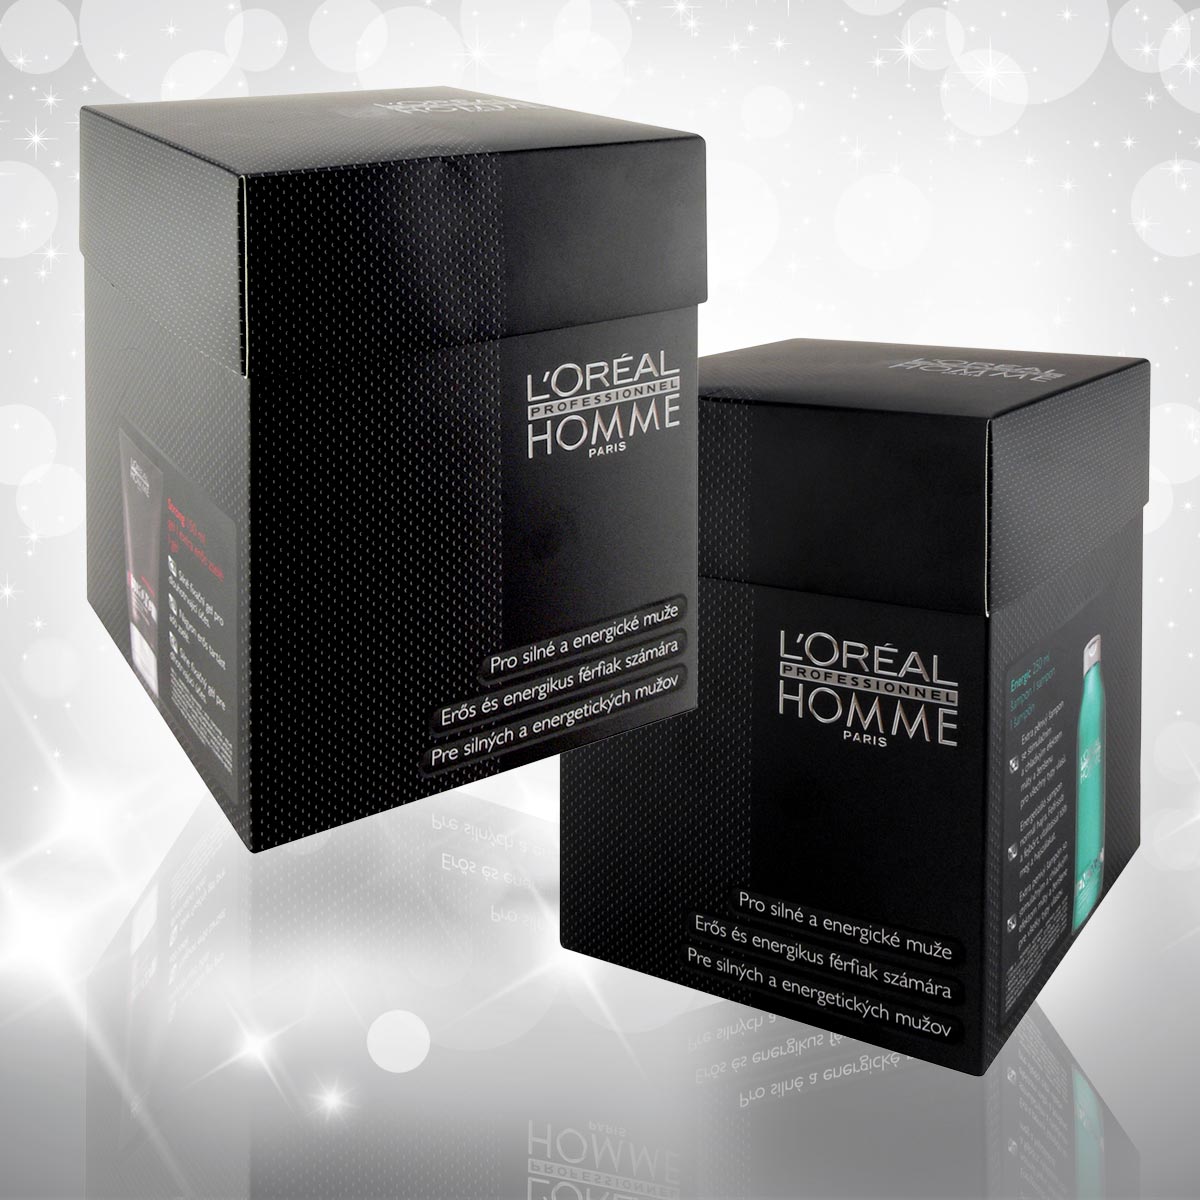 Vianočné darčeky L’Oréal Professionnel 2014 pre mužov – špeciálny darčekový balíček obsahuje energizujúci šampón a gél strong.